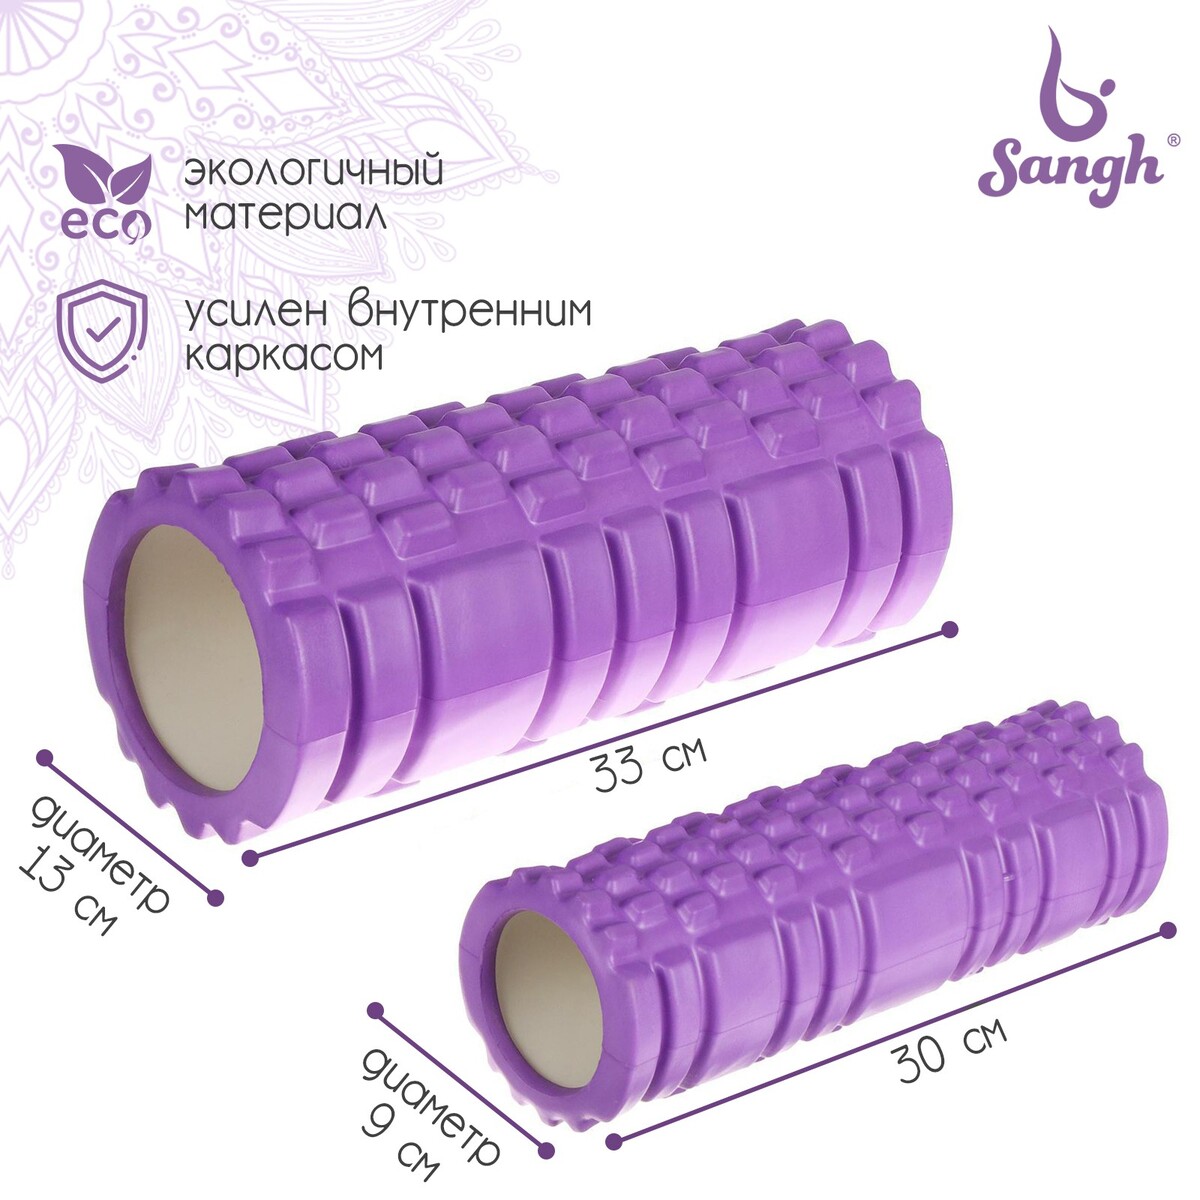 Набор массажных роликов 2 в 1 sangh, 33х13 см и 30х9 см, цвет фиолетовый набор для чистки одежды lrs 50 ролик 2 запасных блока